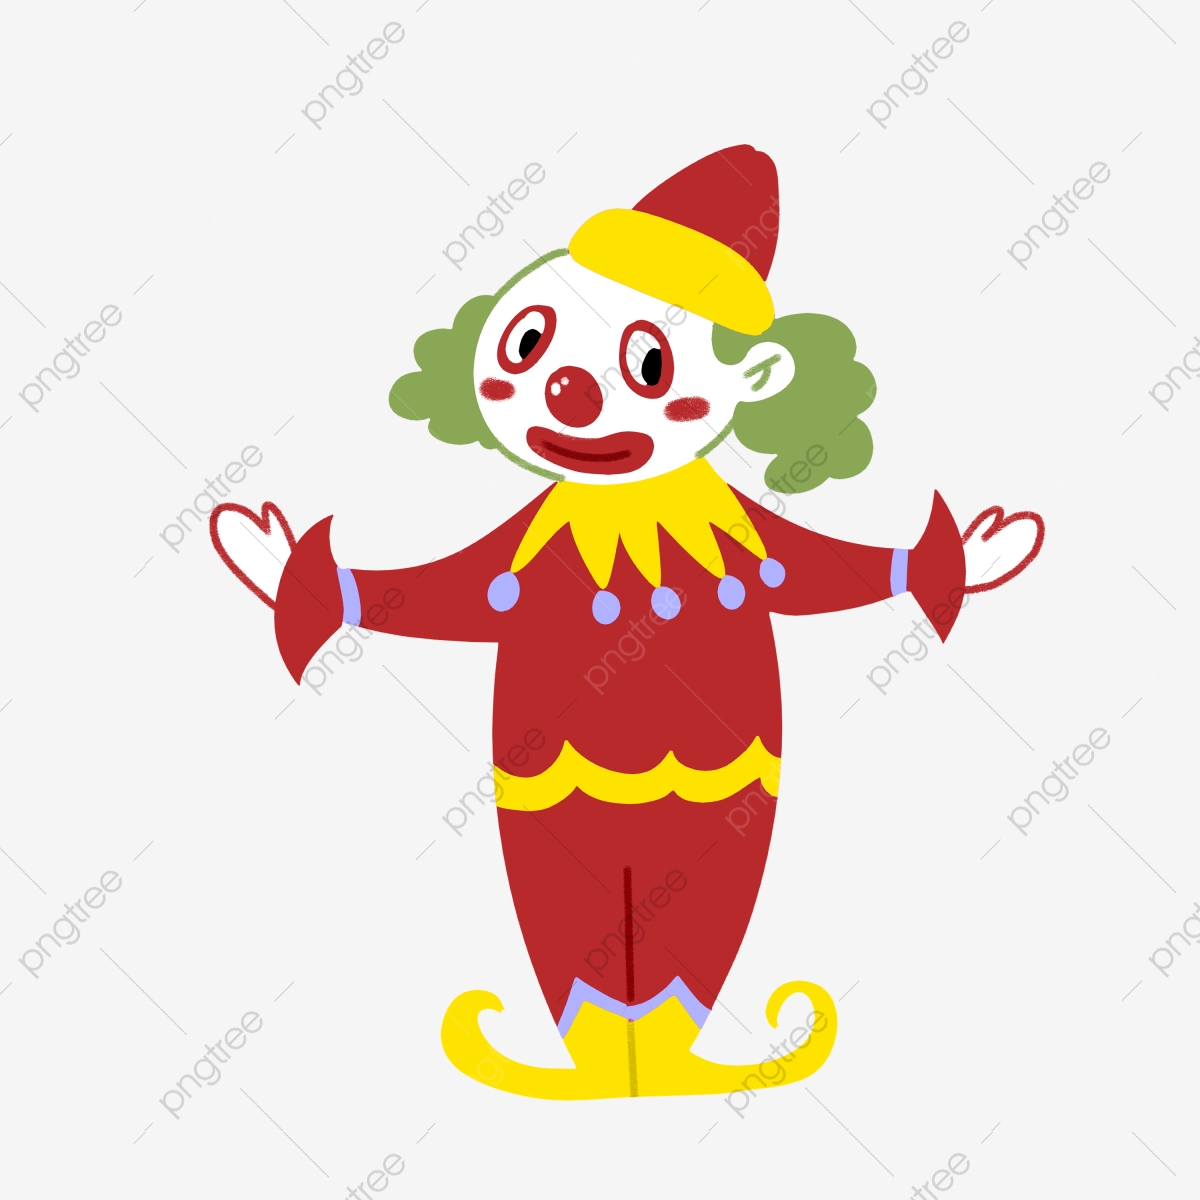 clown clipart hand